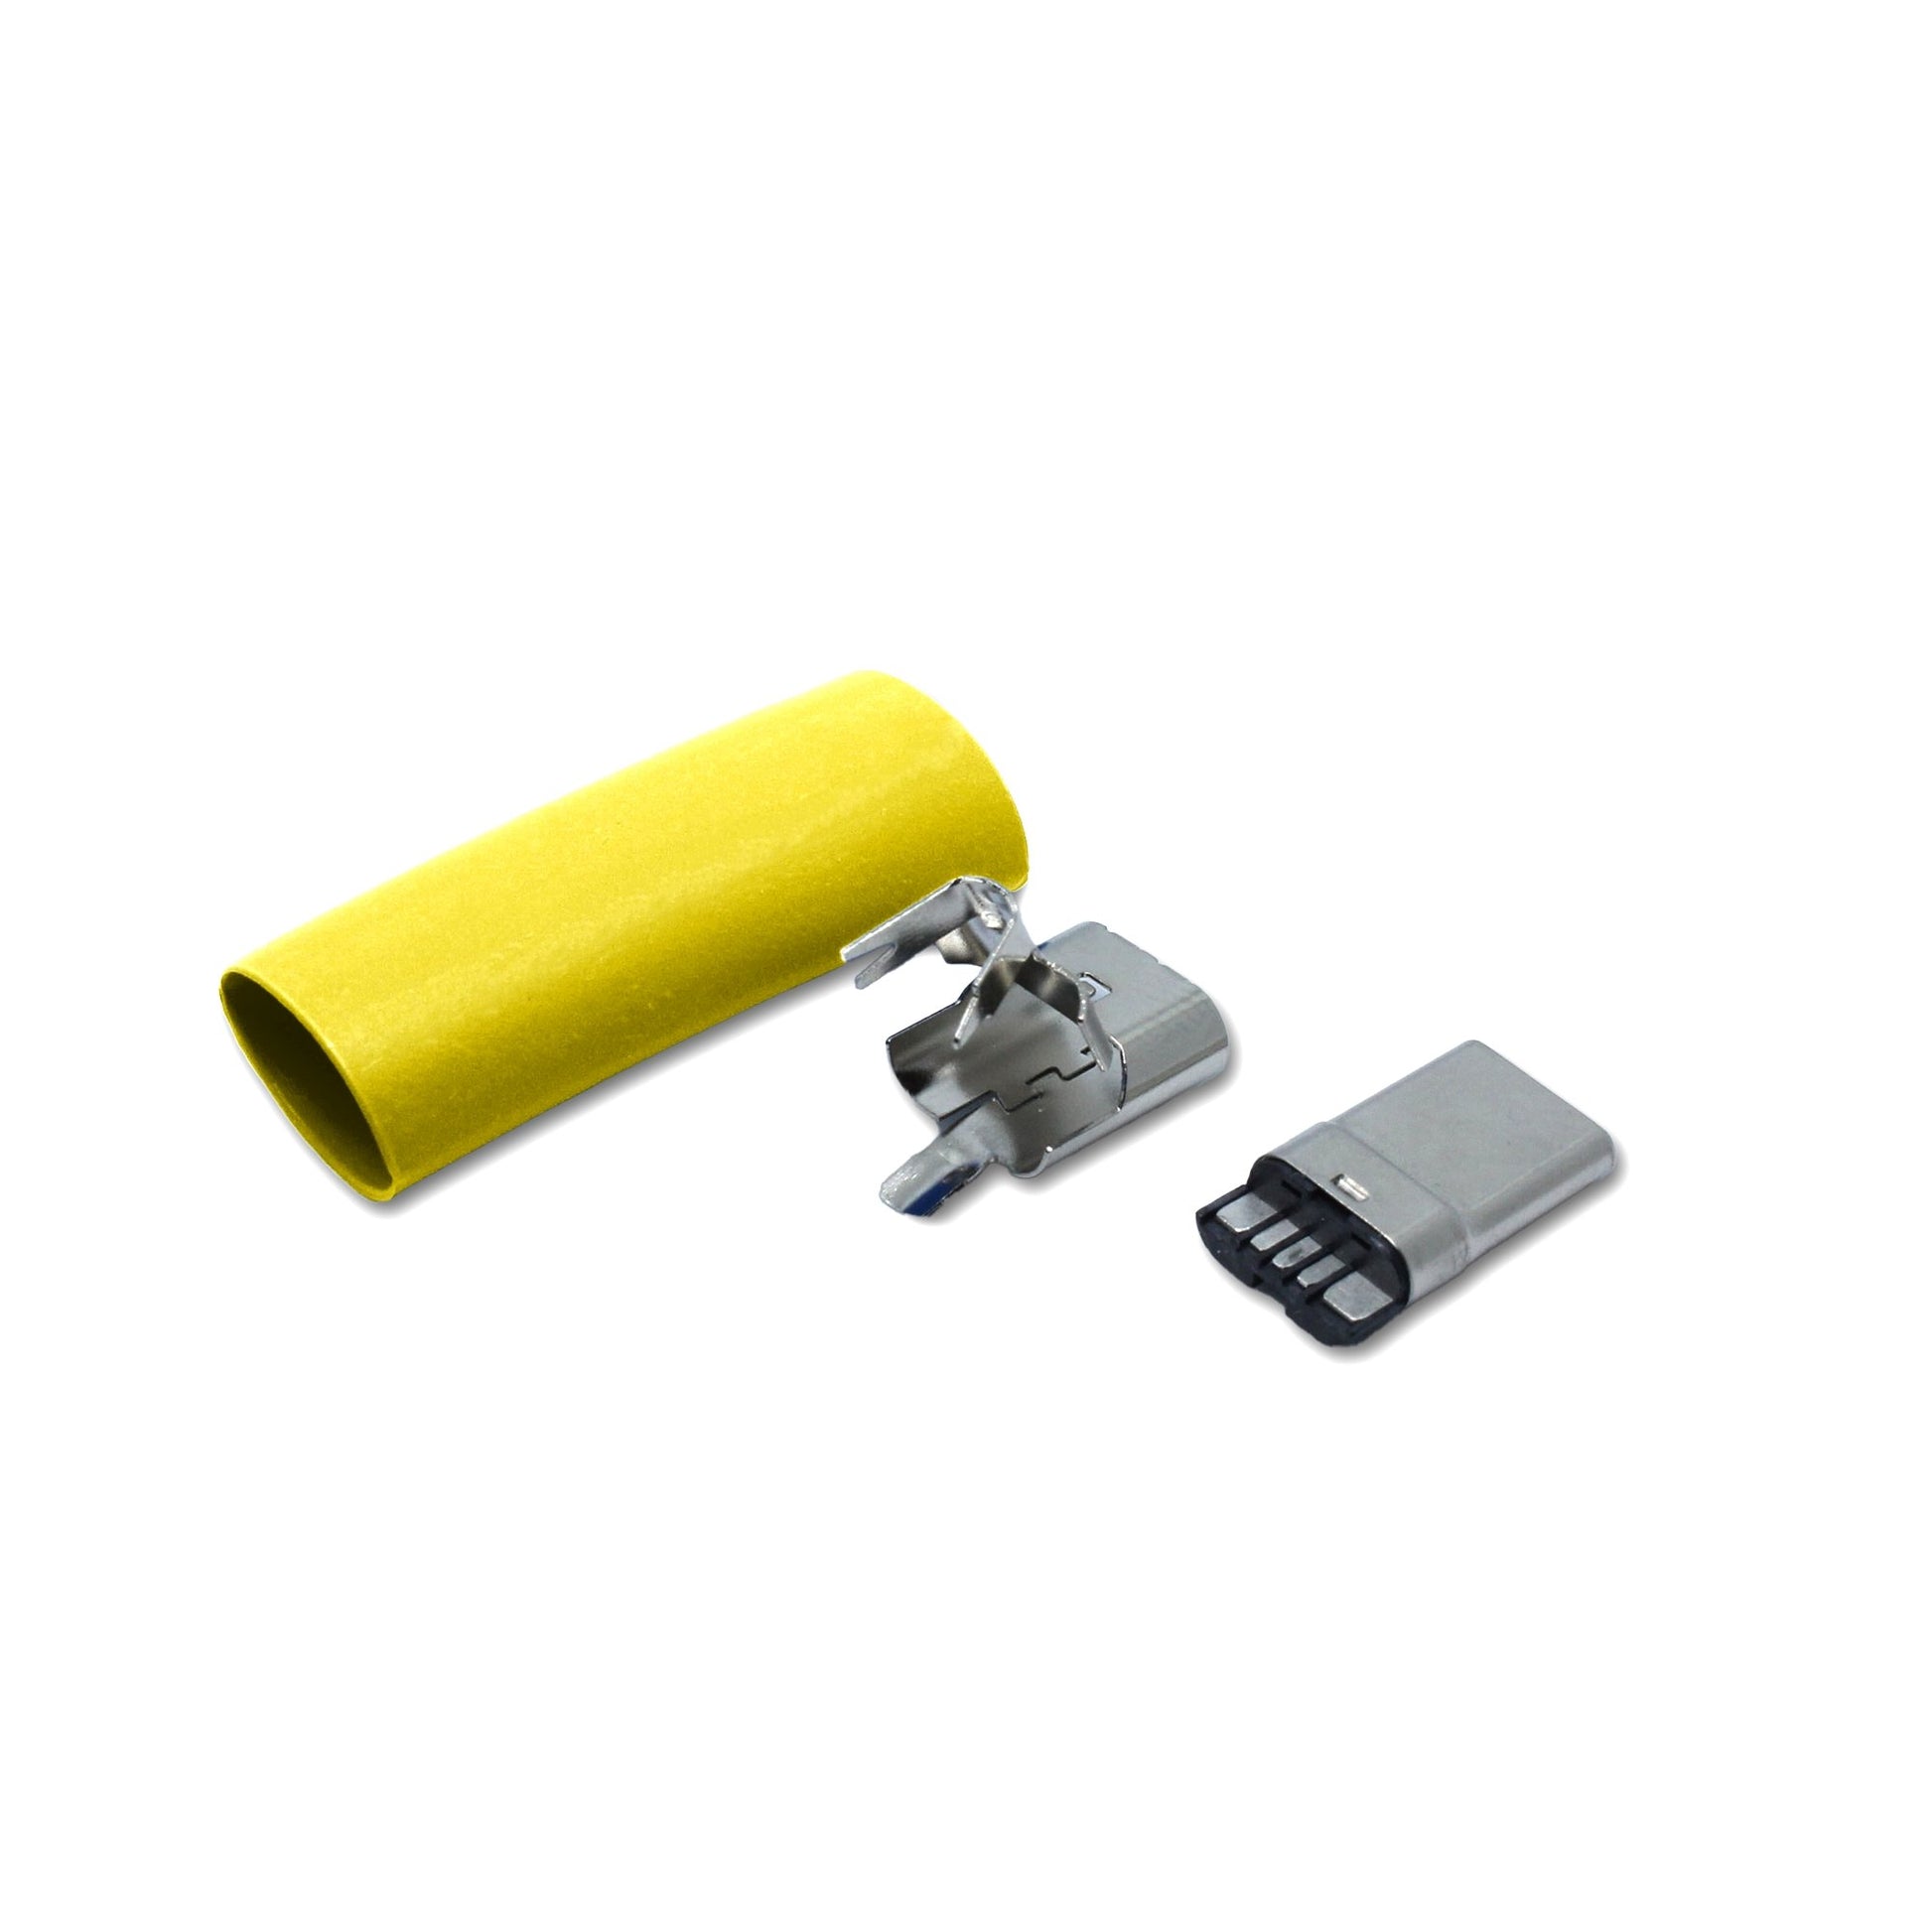 Einzelteile gelber USB C Stecker, Ersatzteil für ein USB 2.0 Kabel  Alt-Text bearbeiten